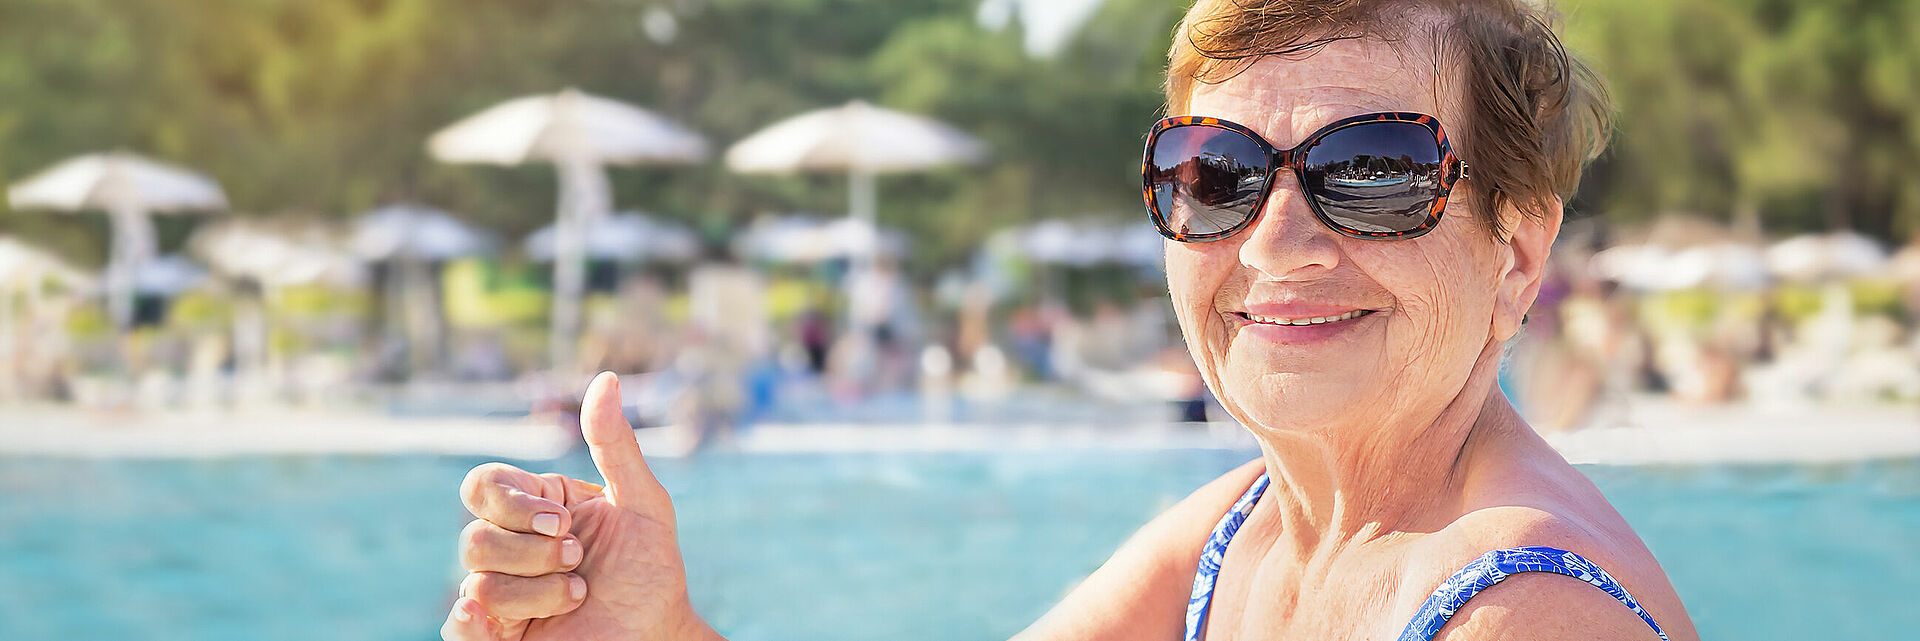 Seniorin mit Sonnenbrille im Freibad